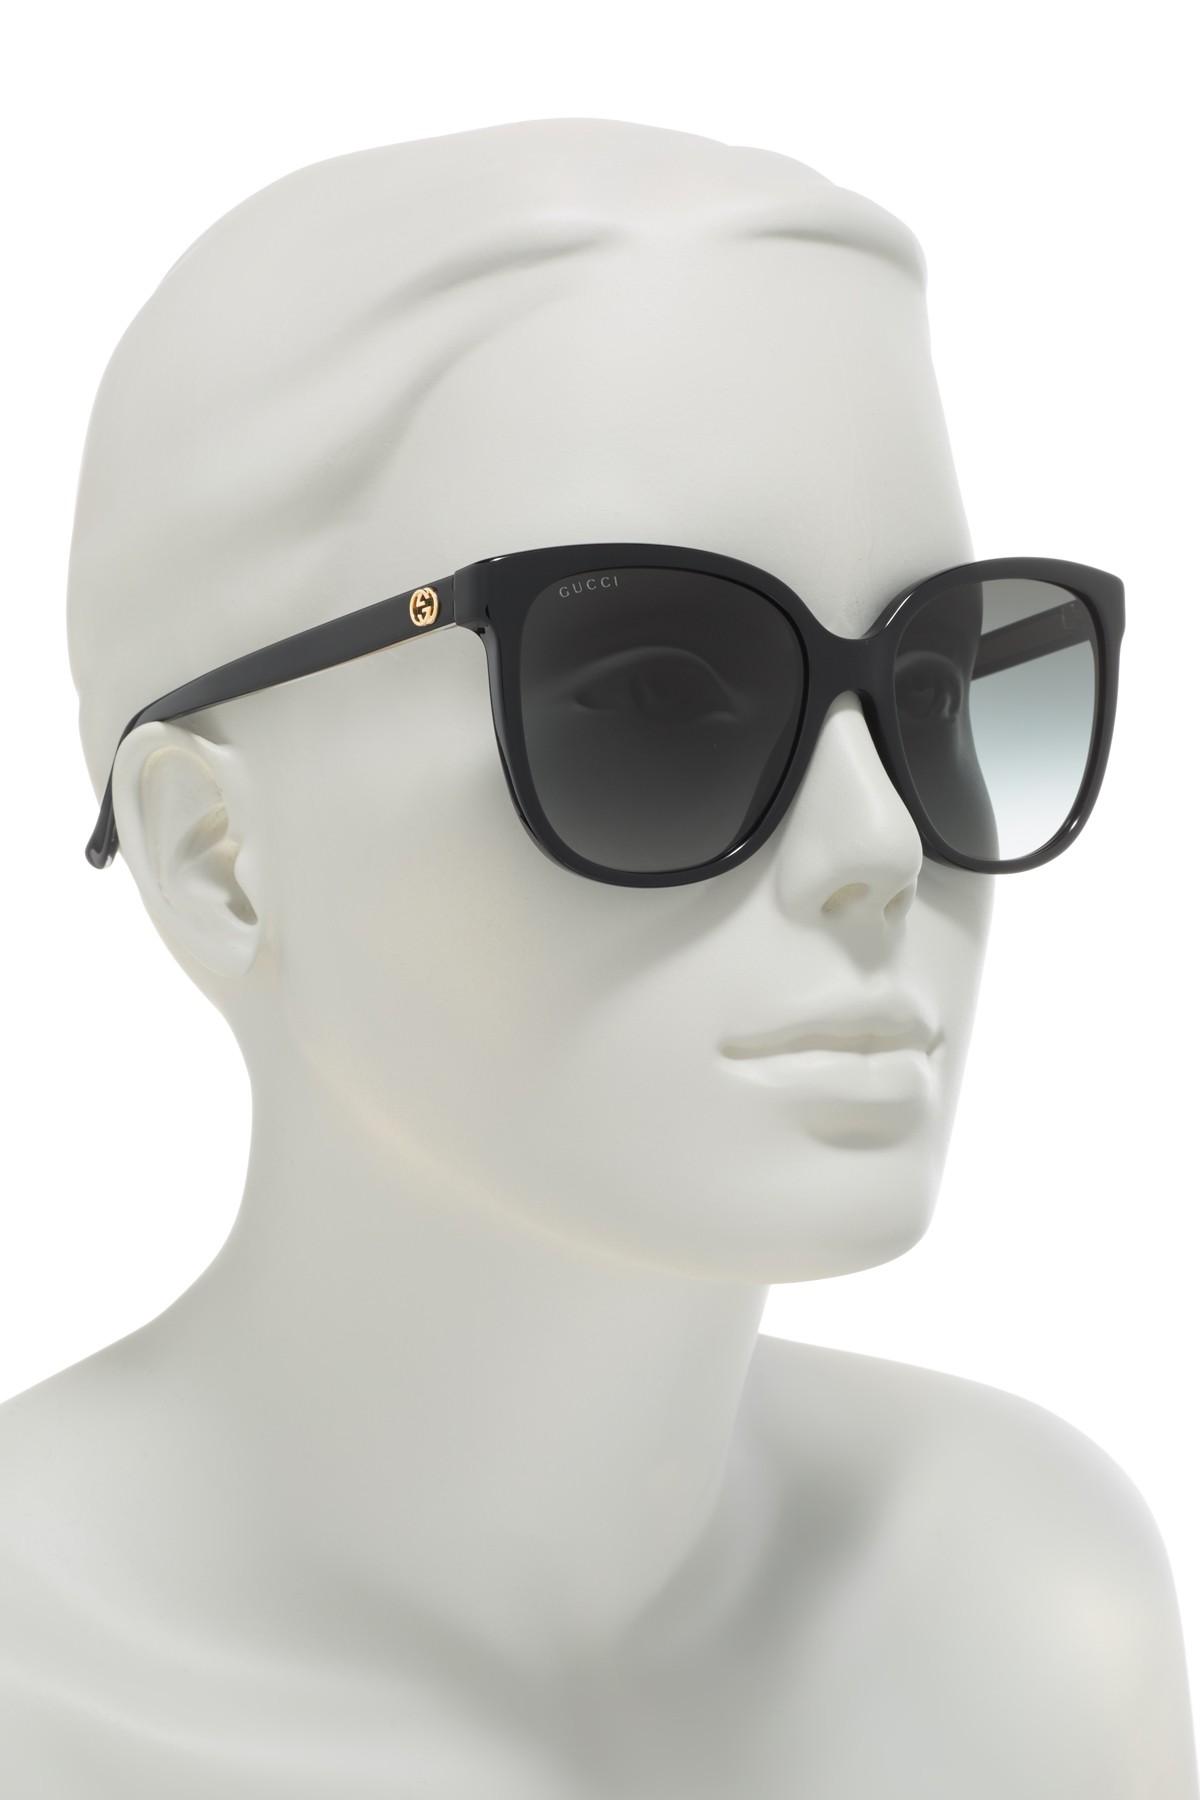 Gucci 55mm Oversized Sunglasses in 